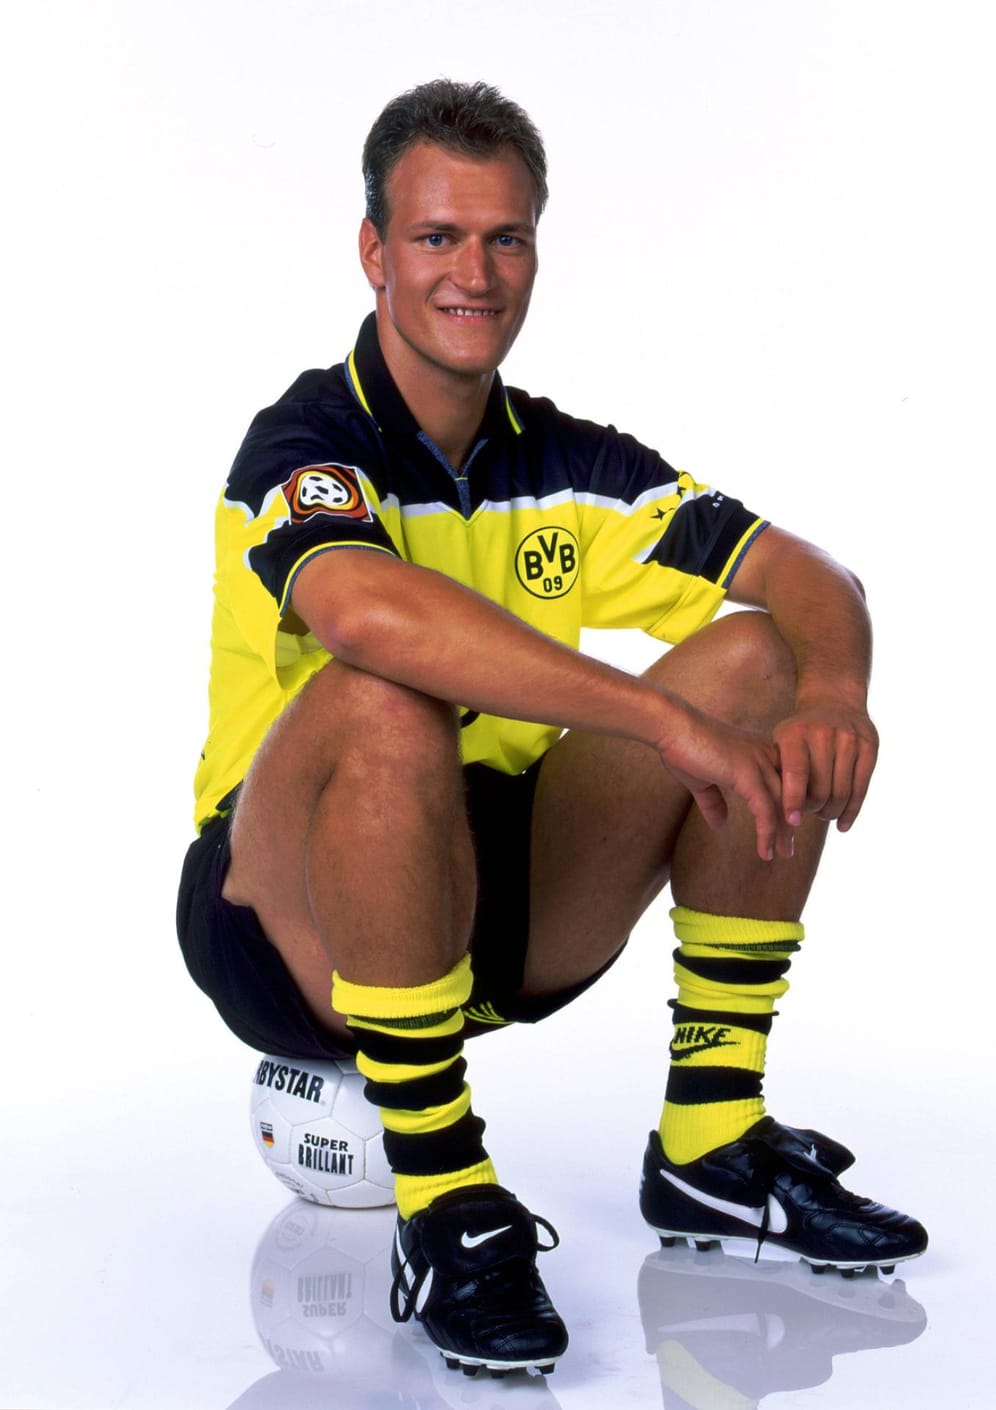 Rene Schneider - hier auf einer Aufnahme aus dem Jahr 1998 - betreibt seit 2003 in Rostock seine eigene Fußballschule. Das aus Kickern der Schule hervorgegangene Männer-Team spielt in der Verbandsliga Mecklenburg-Vorpommern.